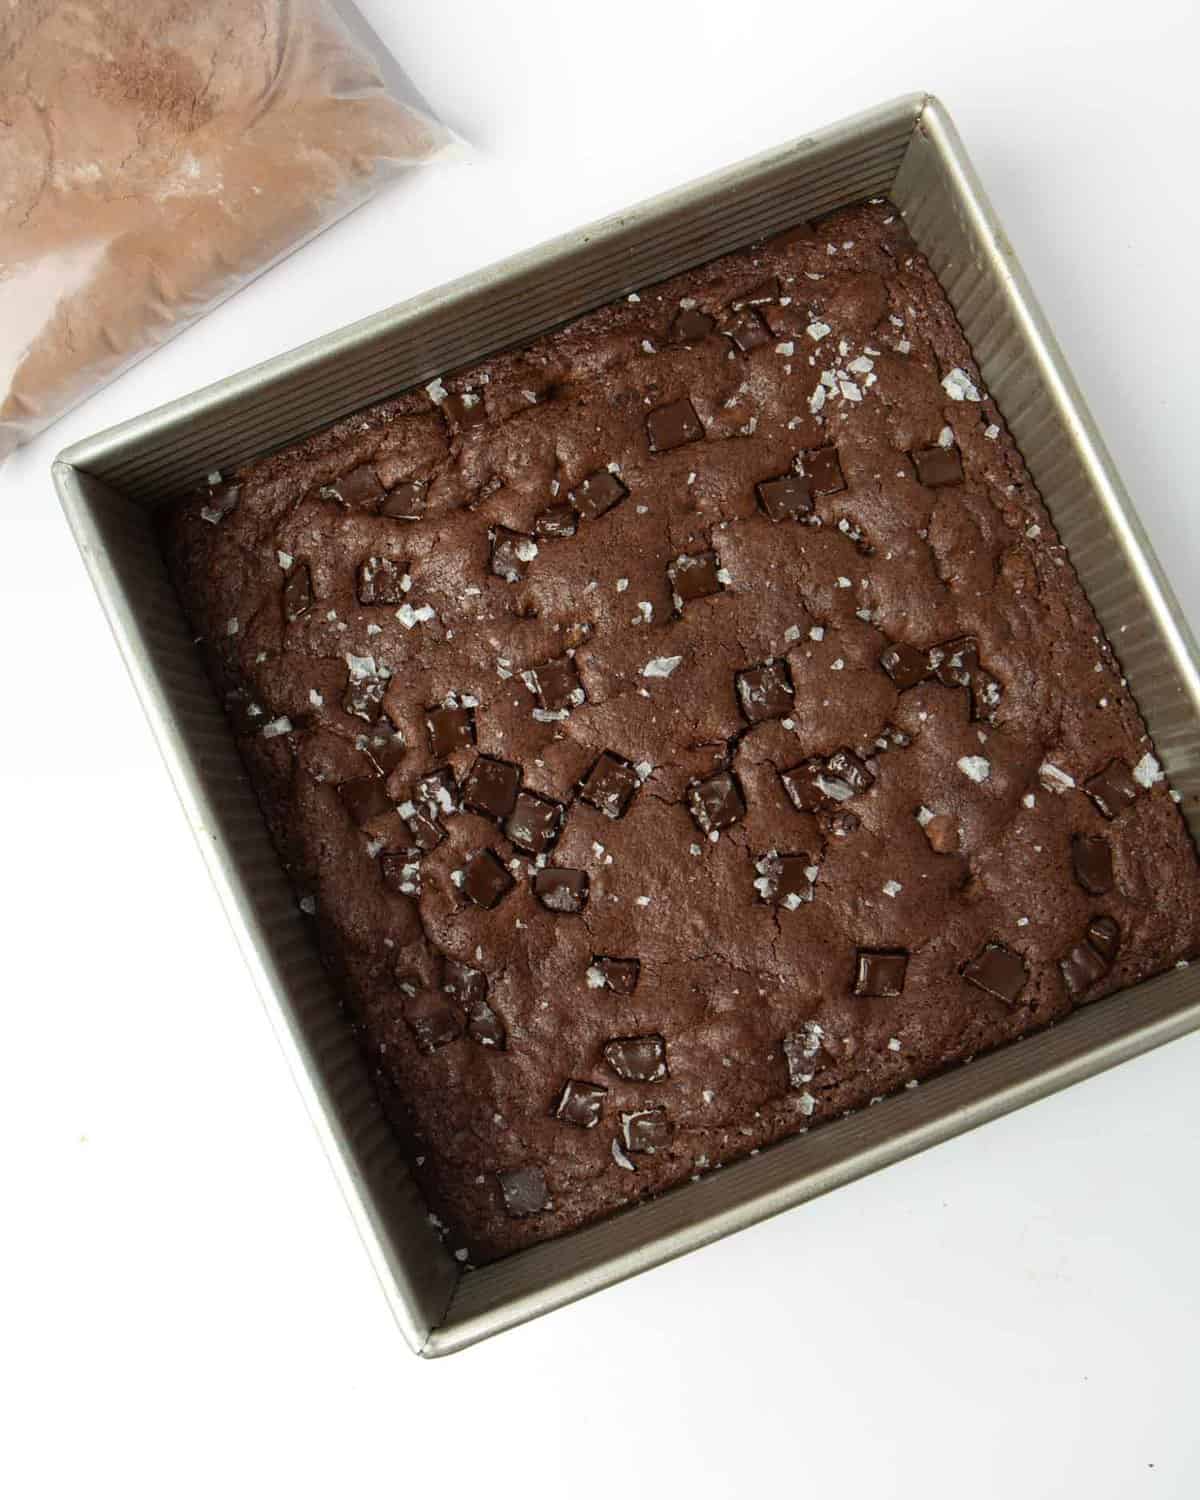 pan of fudgy brownies